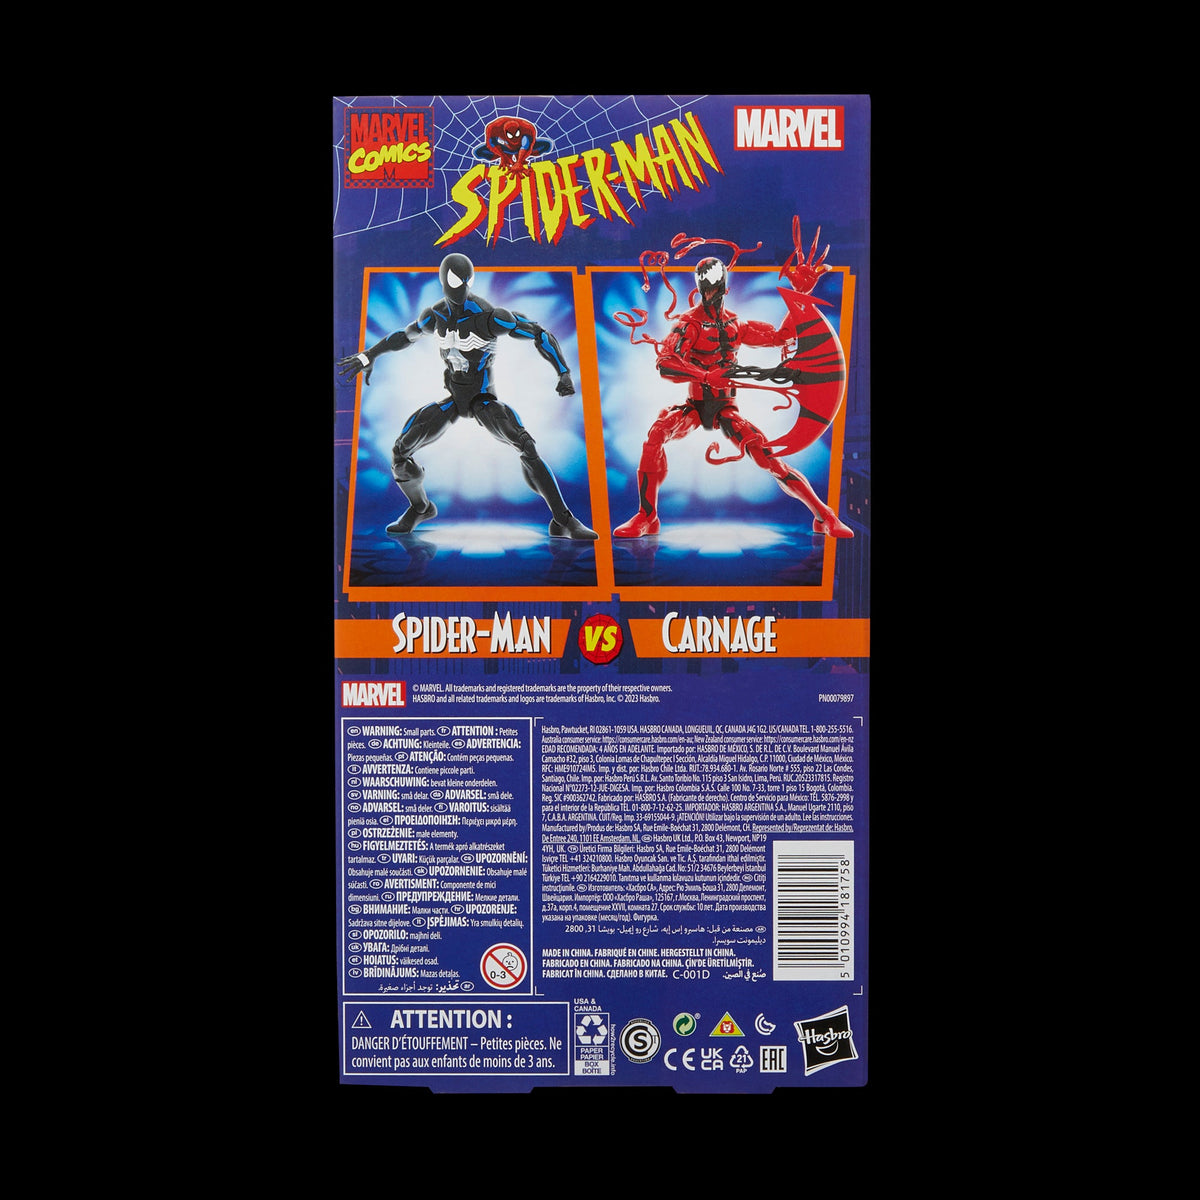 Hasbro Marvel Legends Series Spider-Man – Hasbro Pulse - EU